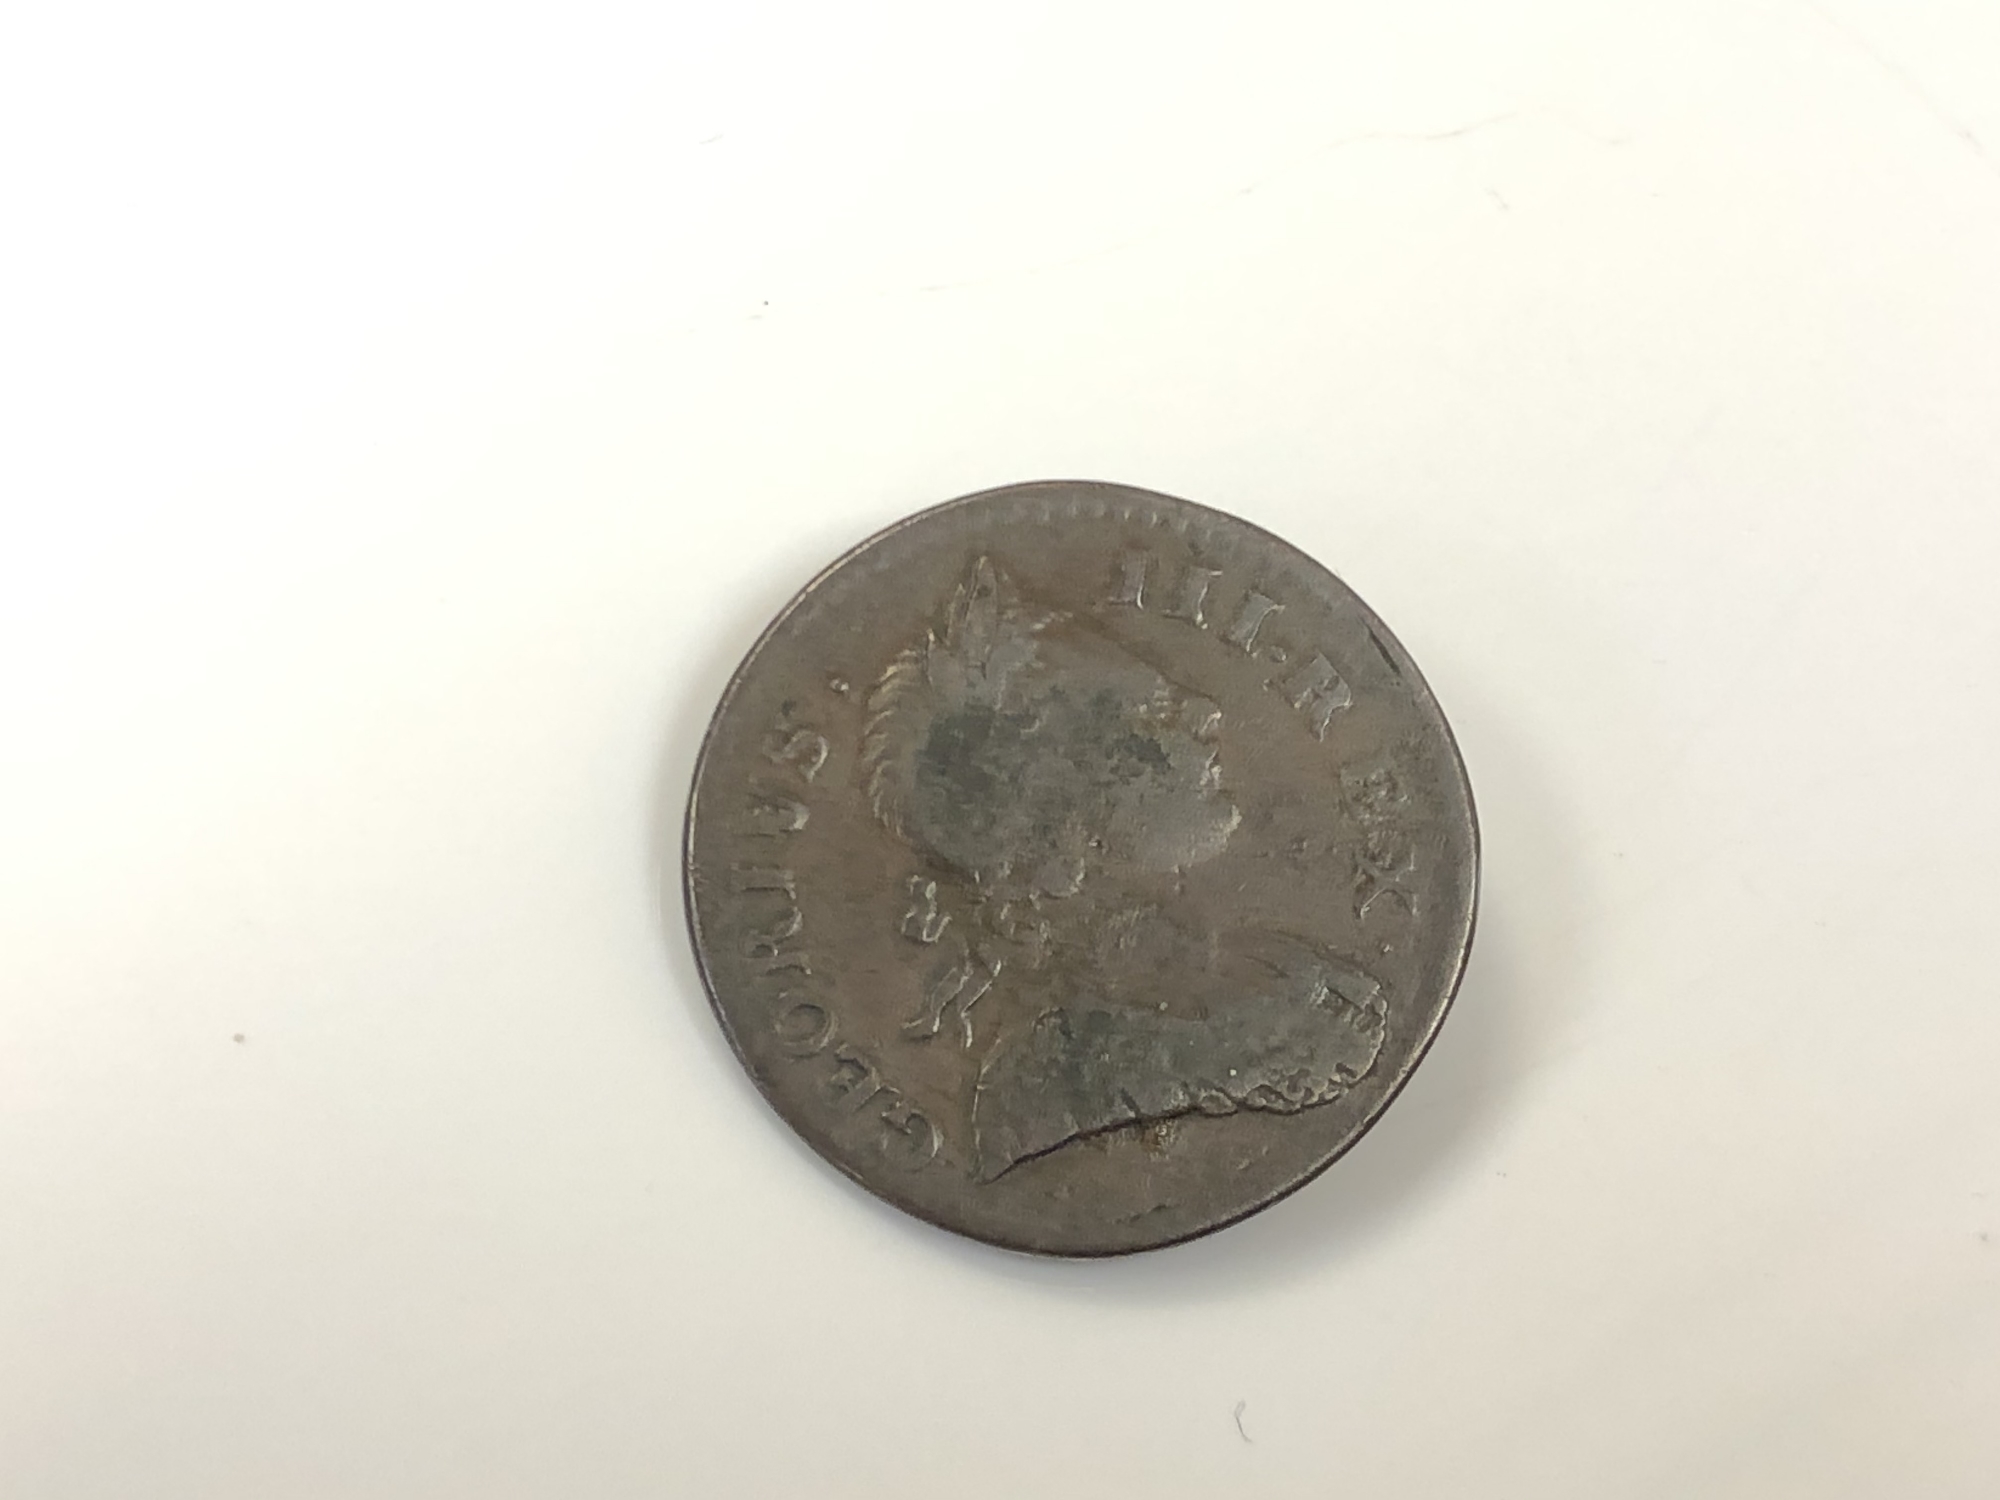 A 1772 half penny (Georgius error).